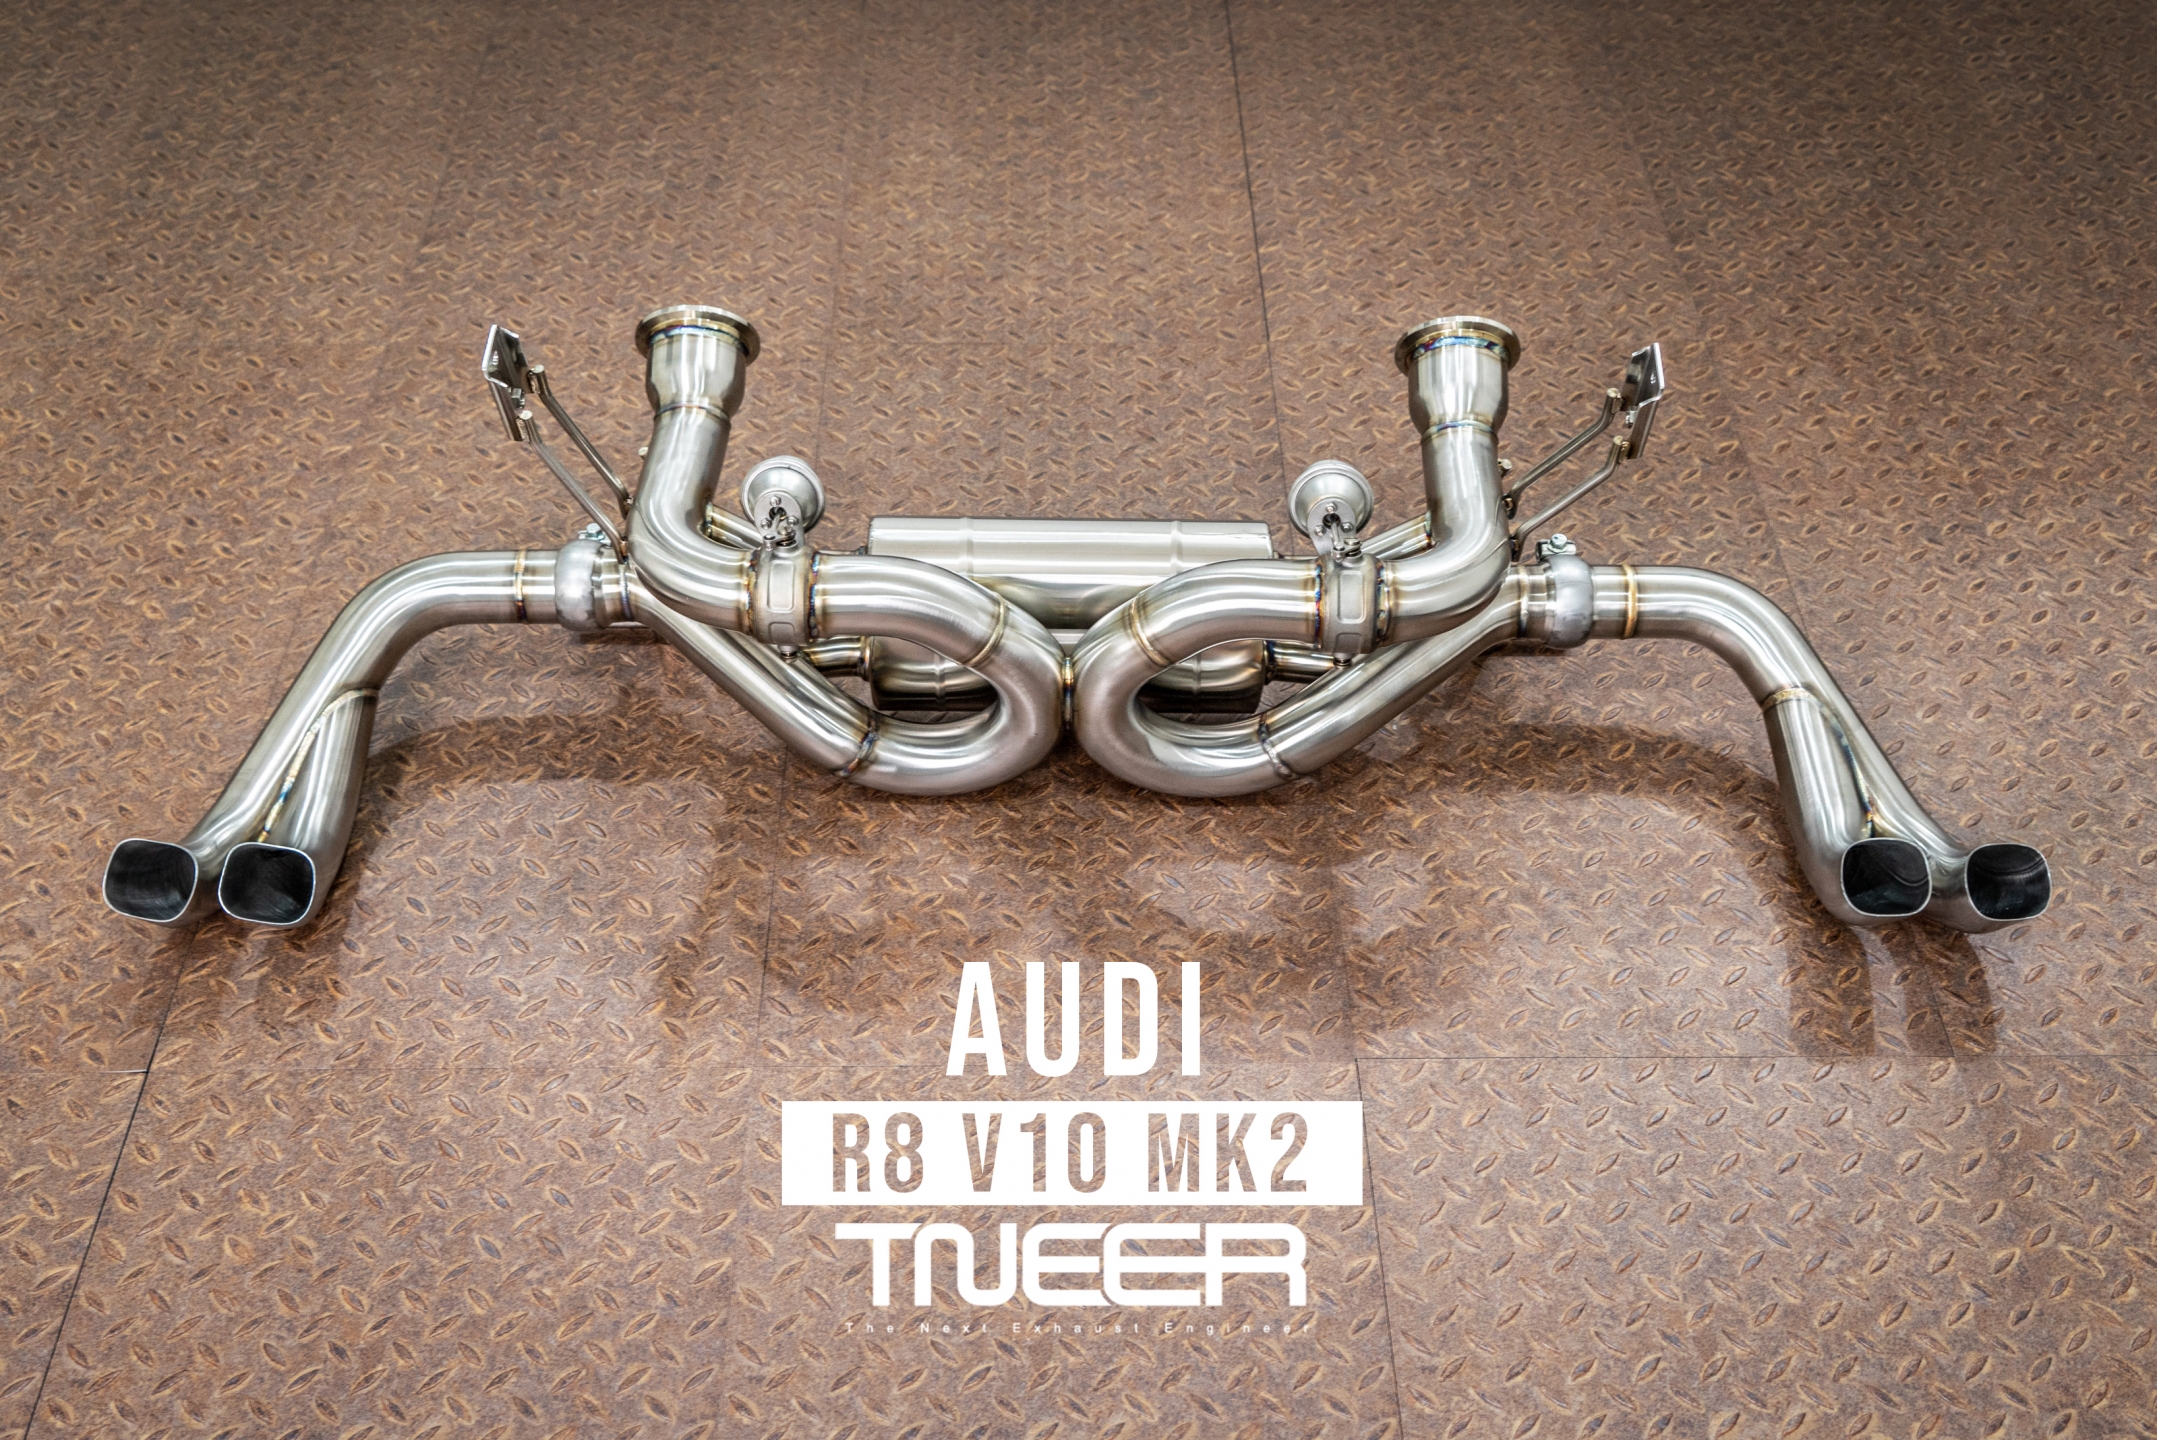 Audi R8 (MK1.5) V10 TNEER Exhaust System (Valvetronic)